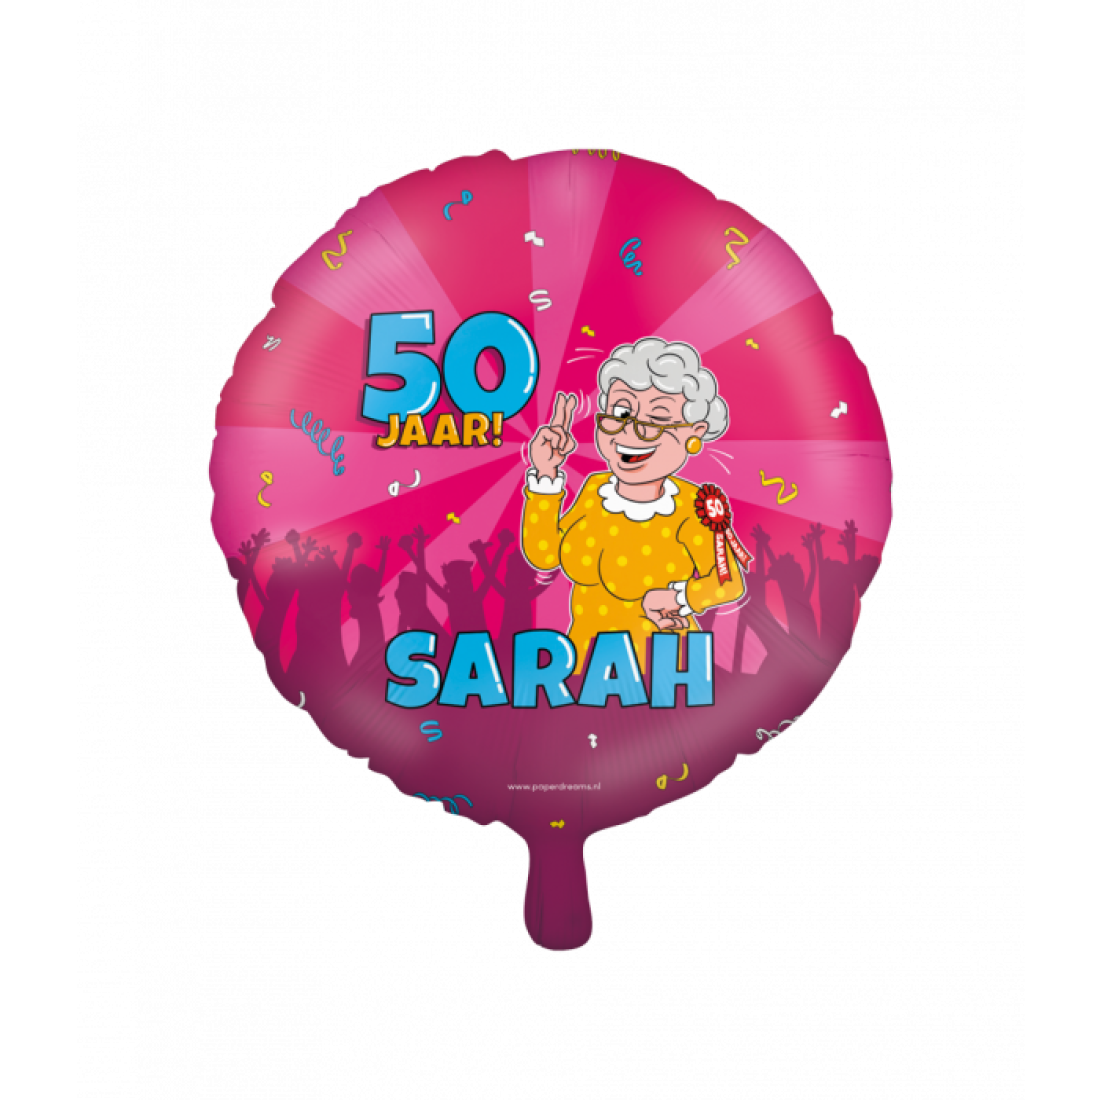 Sarah Cartoon foil balloon